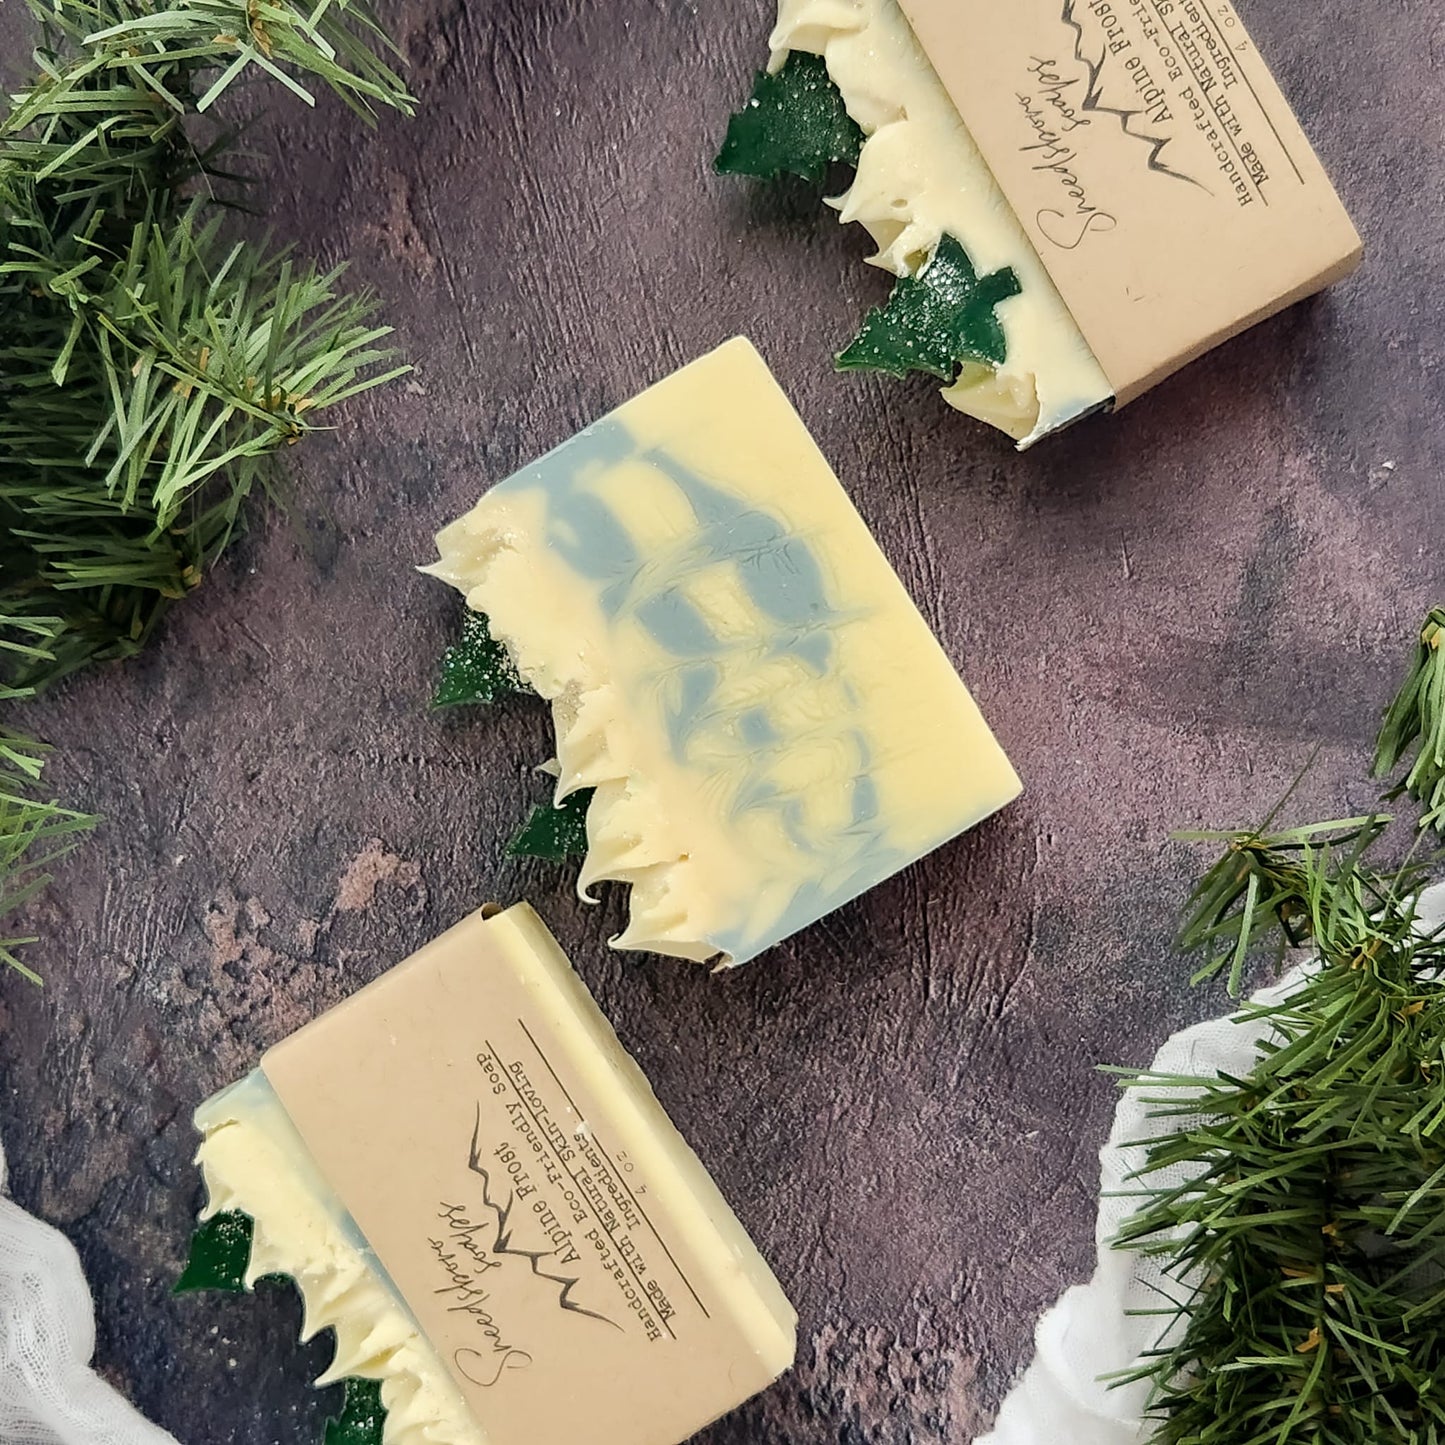 Alpine Frost - Christmas Soap - Artisan Soap Bar - Gift for Women